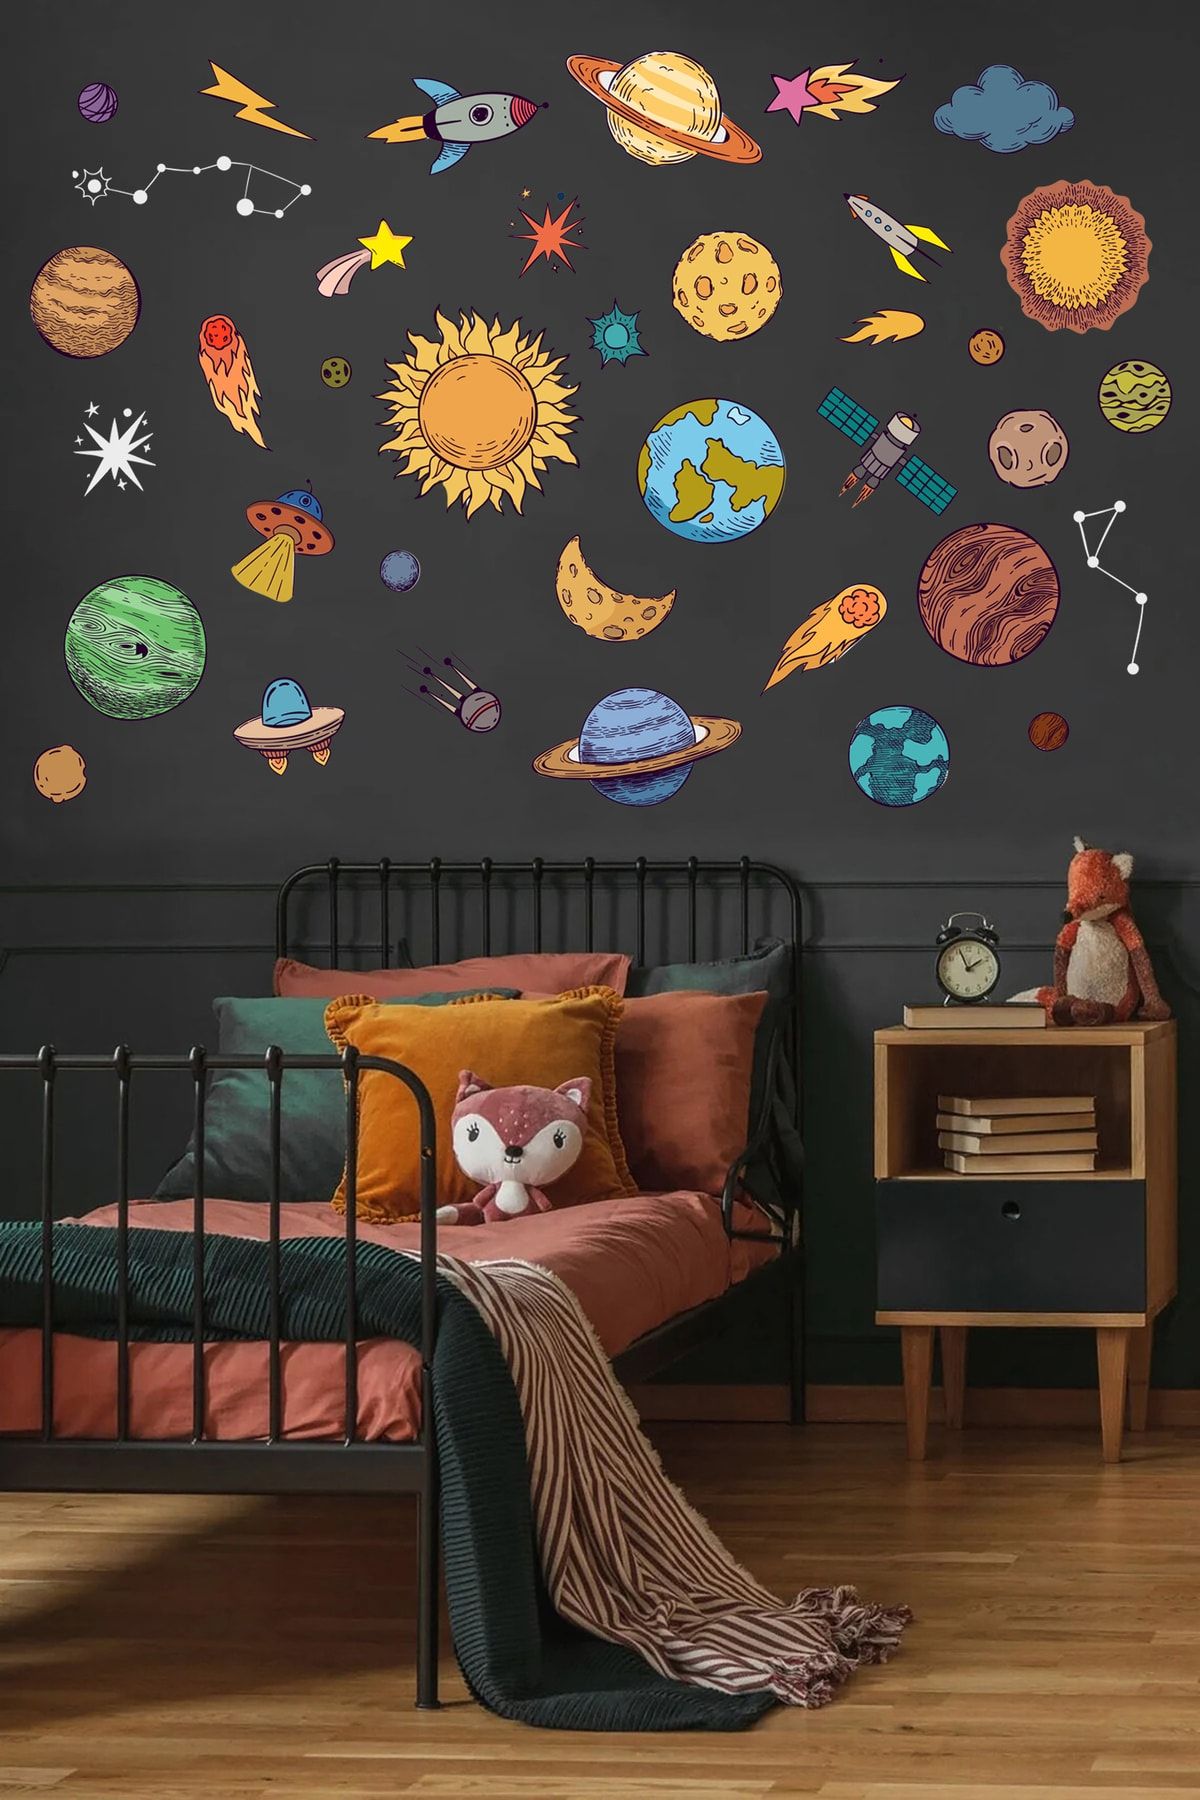 Sticker Sepetim Uzay Temalı Gezegenler, Yıldızlar, Astroit Uzay Objeleri Dekoratif Duvar Sticker